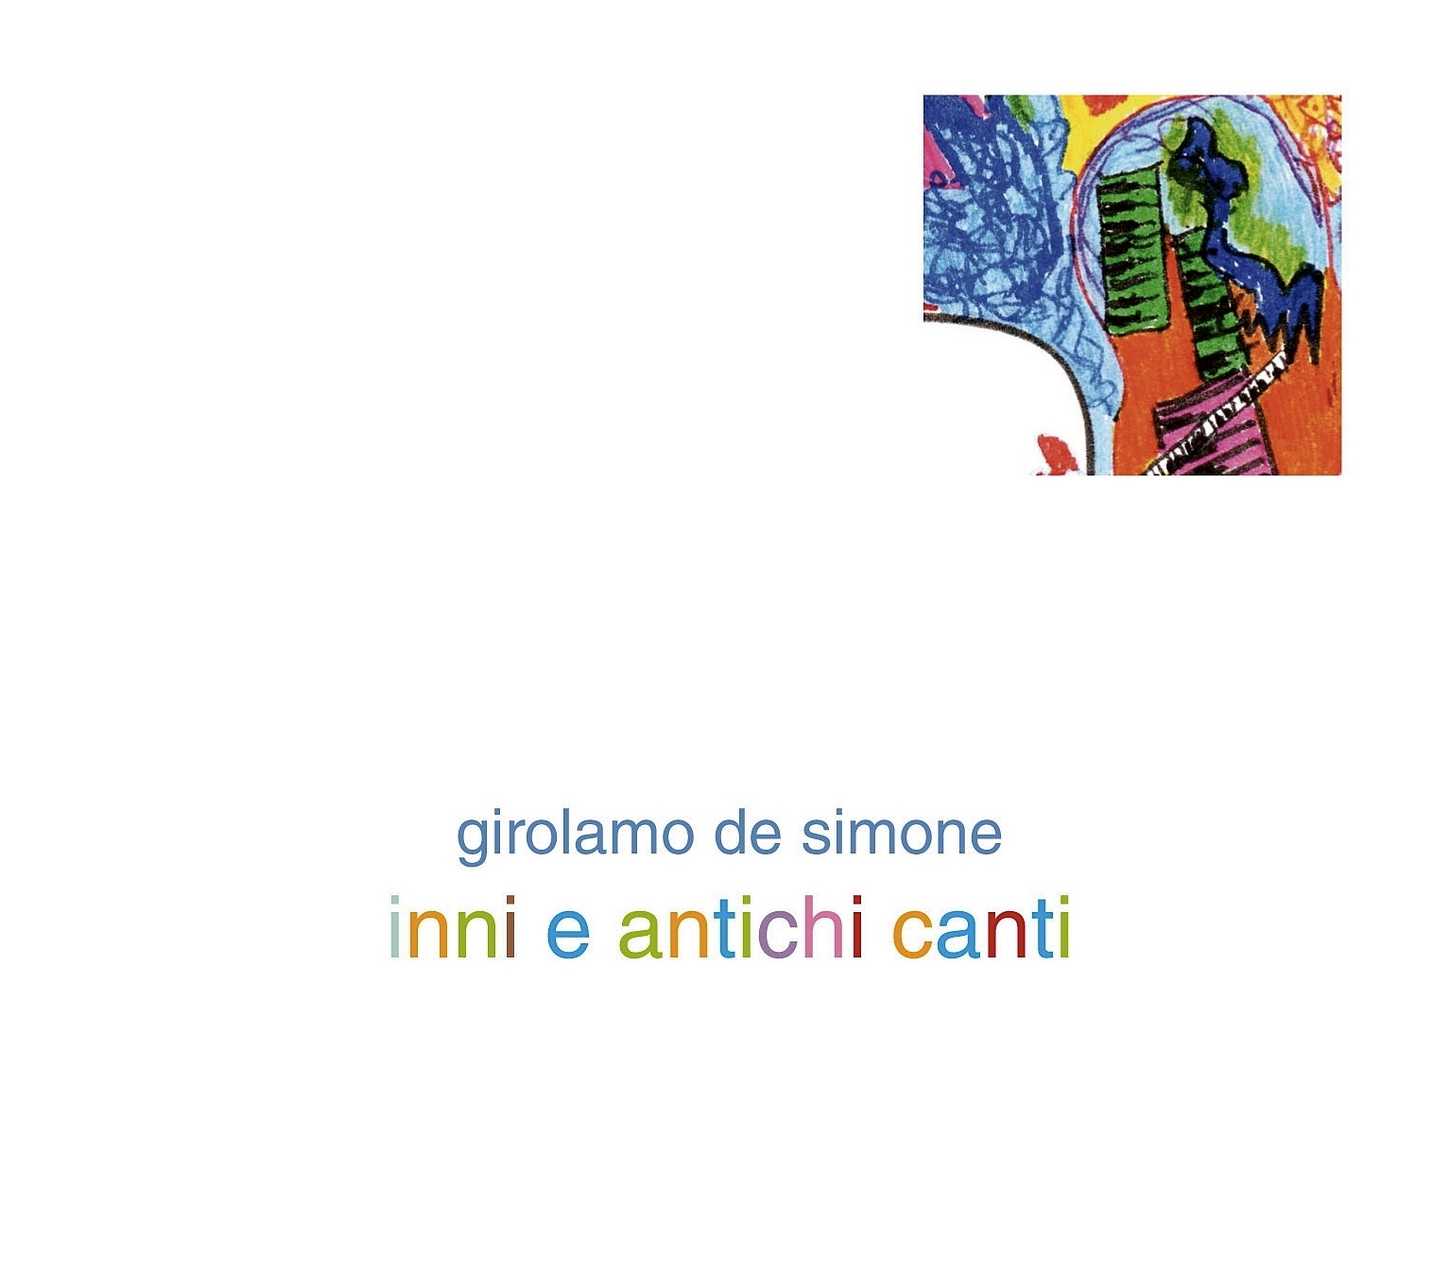 Inni e antichi canti: a Roma il nuovo lavoro di Girolamo De Simone